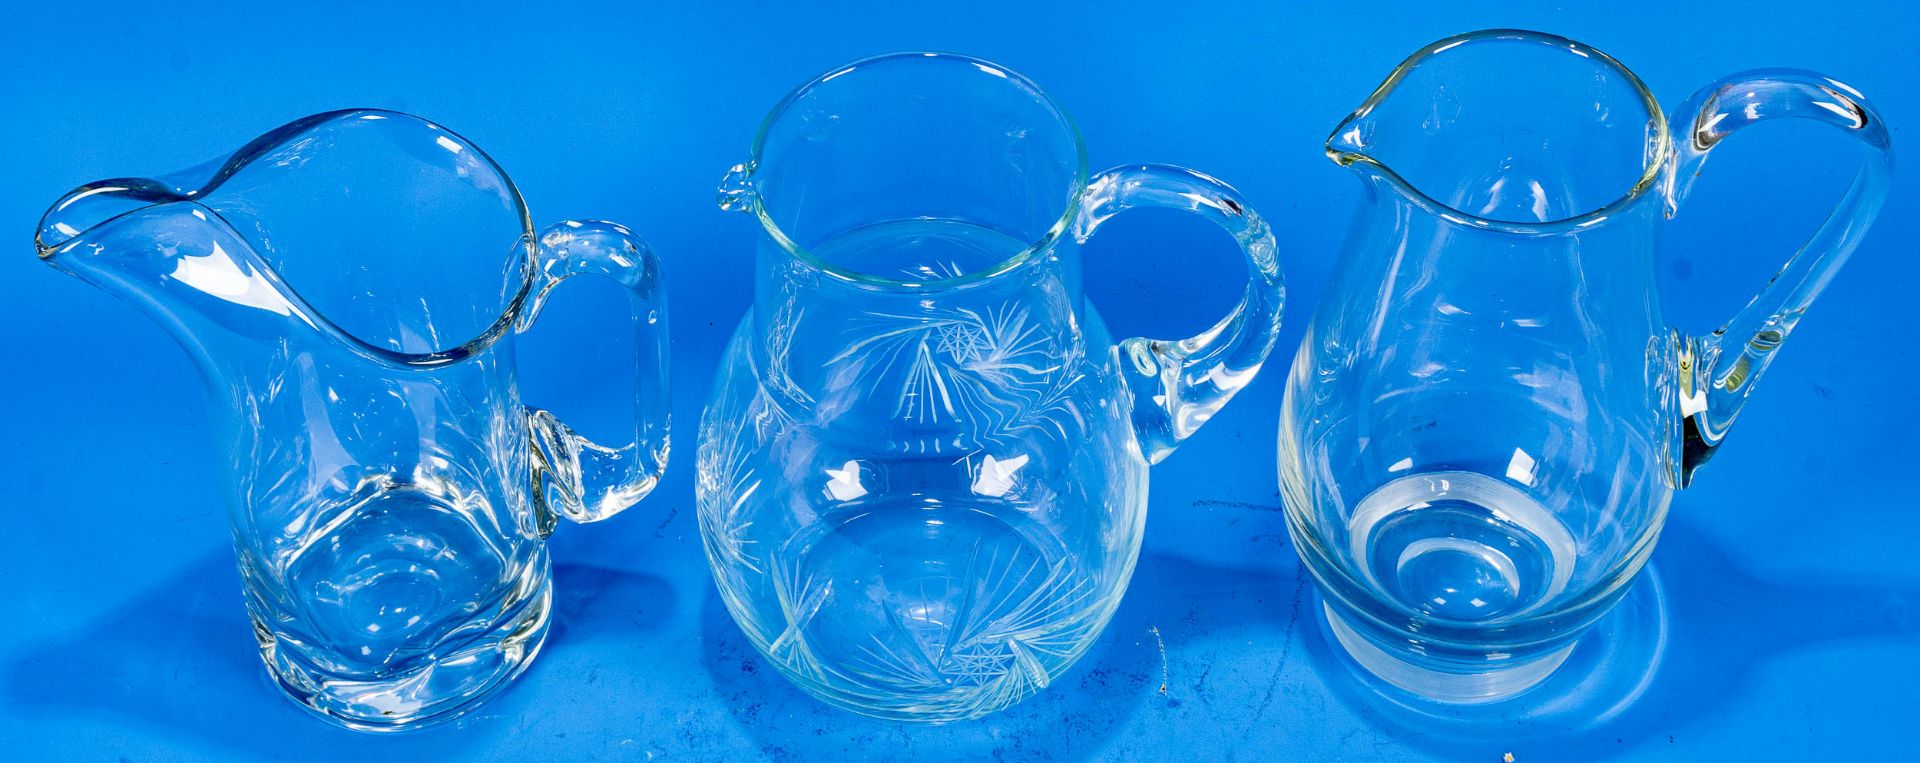 3teiliges Konvolut versch. Saftkrüge/Wasserkrüge. Farblose Glaskörper mit seitlichem Griff, teilwei - Image 3 of 9